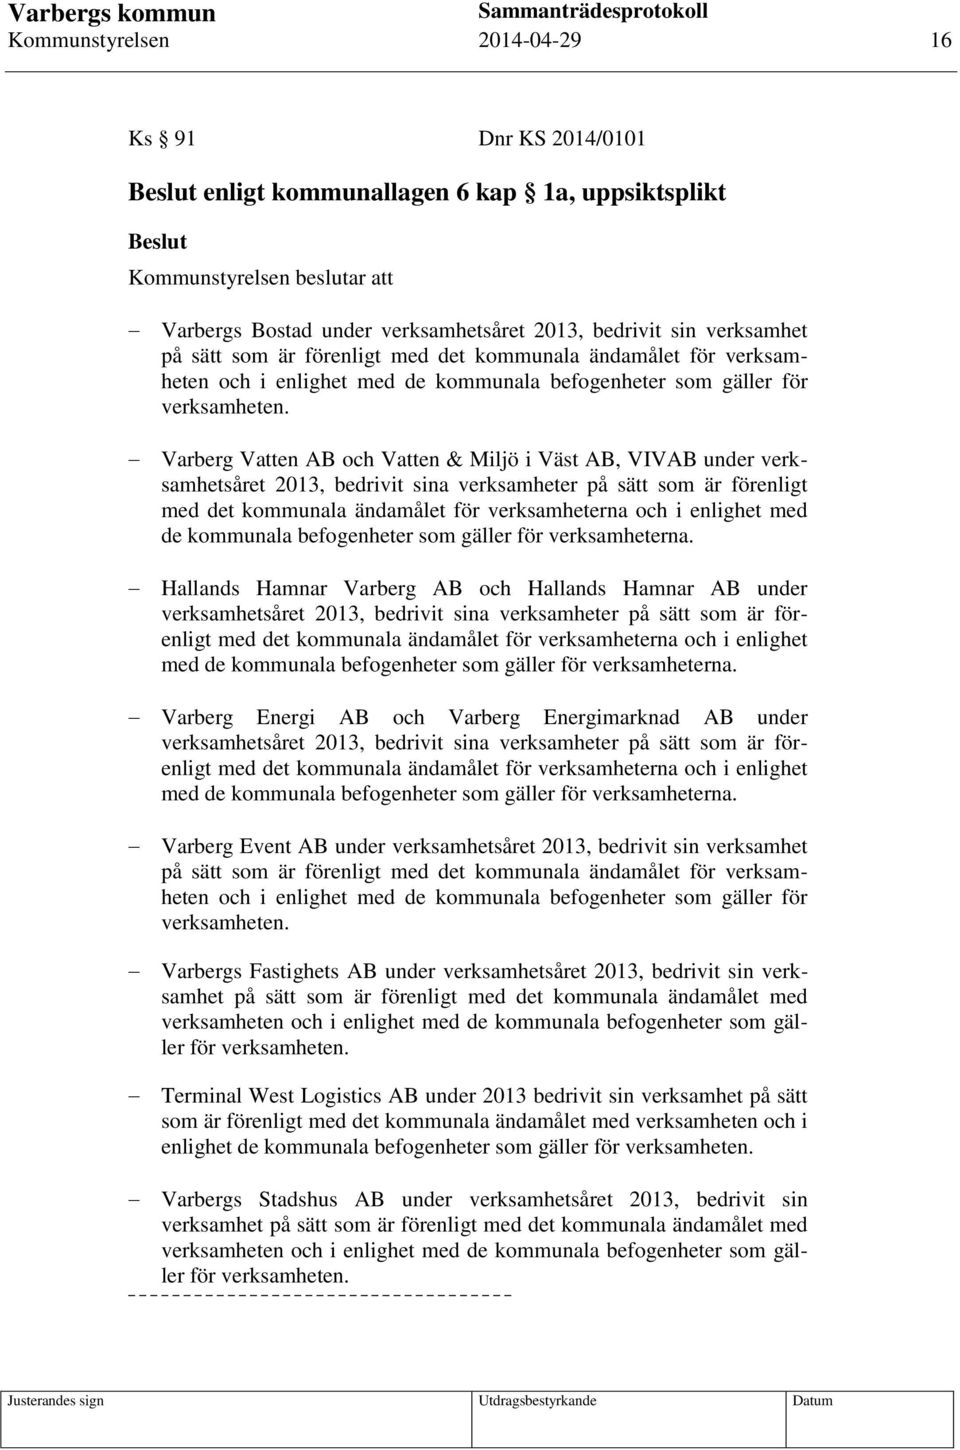 Varberg Vatten AB och Vatten & Miljö i Väst AB, VIVAB under verksamhetsåret 2013, bedrivit sina verksamheter på sätt som är förenligt med det kommunala ändamålet för verksamheterna och i enlighet med